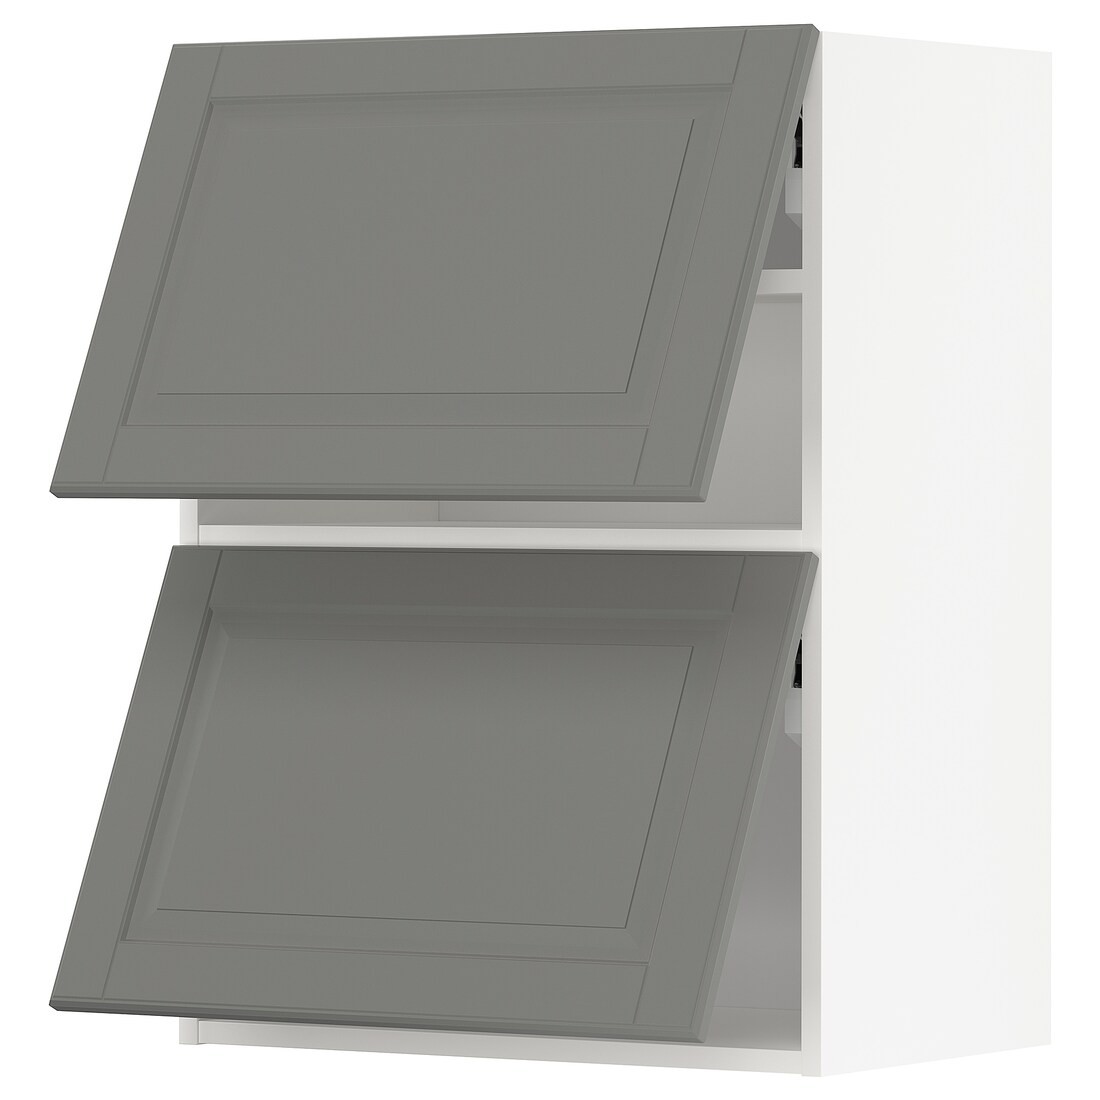 METOD МЕТОД Навесной горизонтальный шкаф / 2 двери, белый / Bodbyn серый, 60x80 см